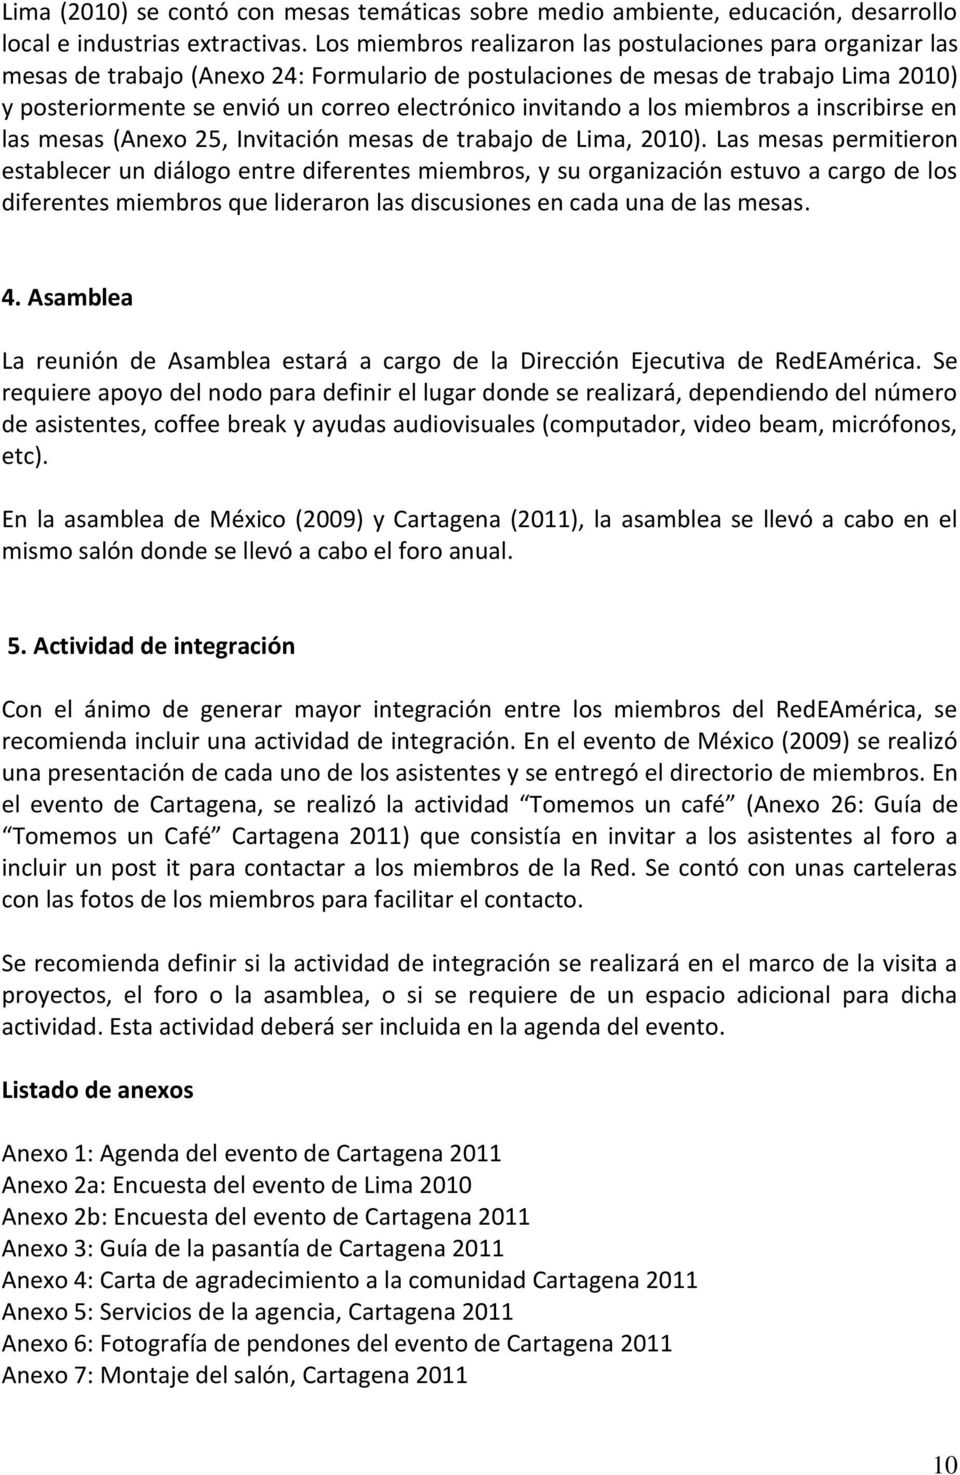 invitando a los miembros a inscribirse en las mesas (Anexo 25, Invitación mesas de trabajo de Lima, 2010).